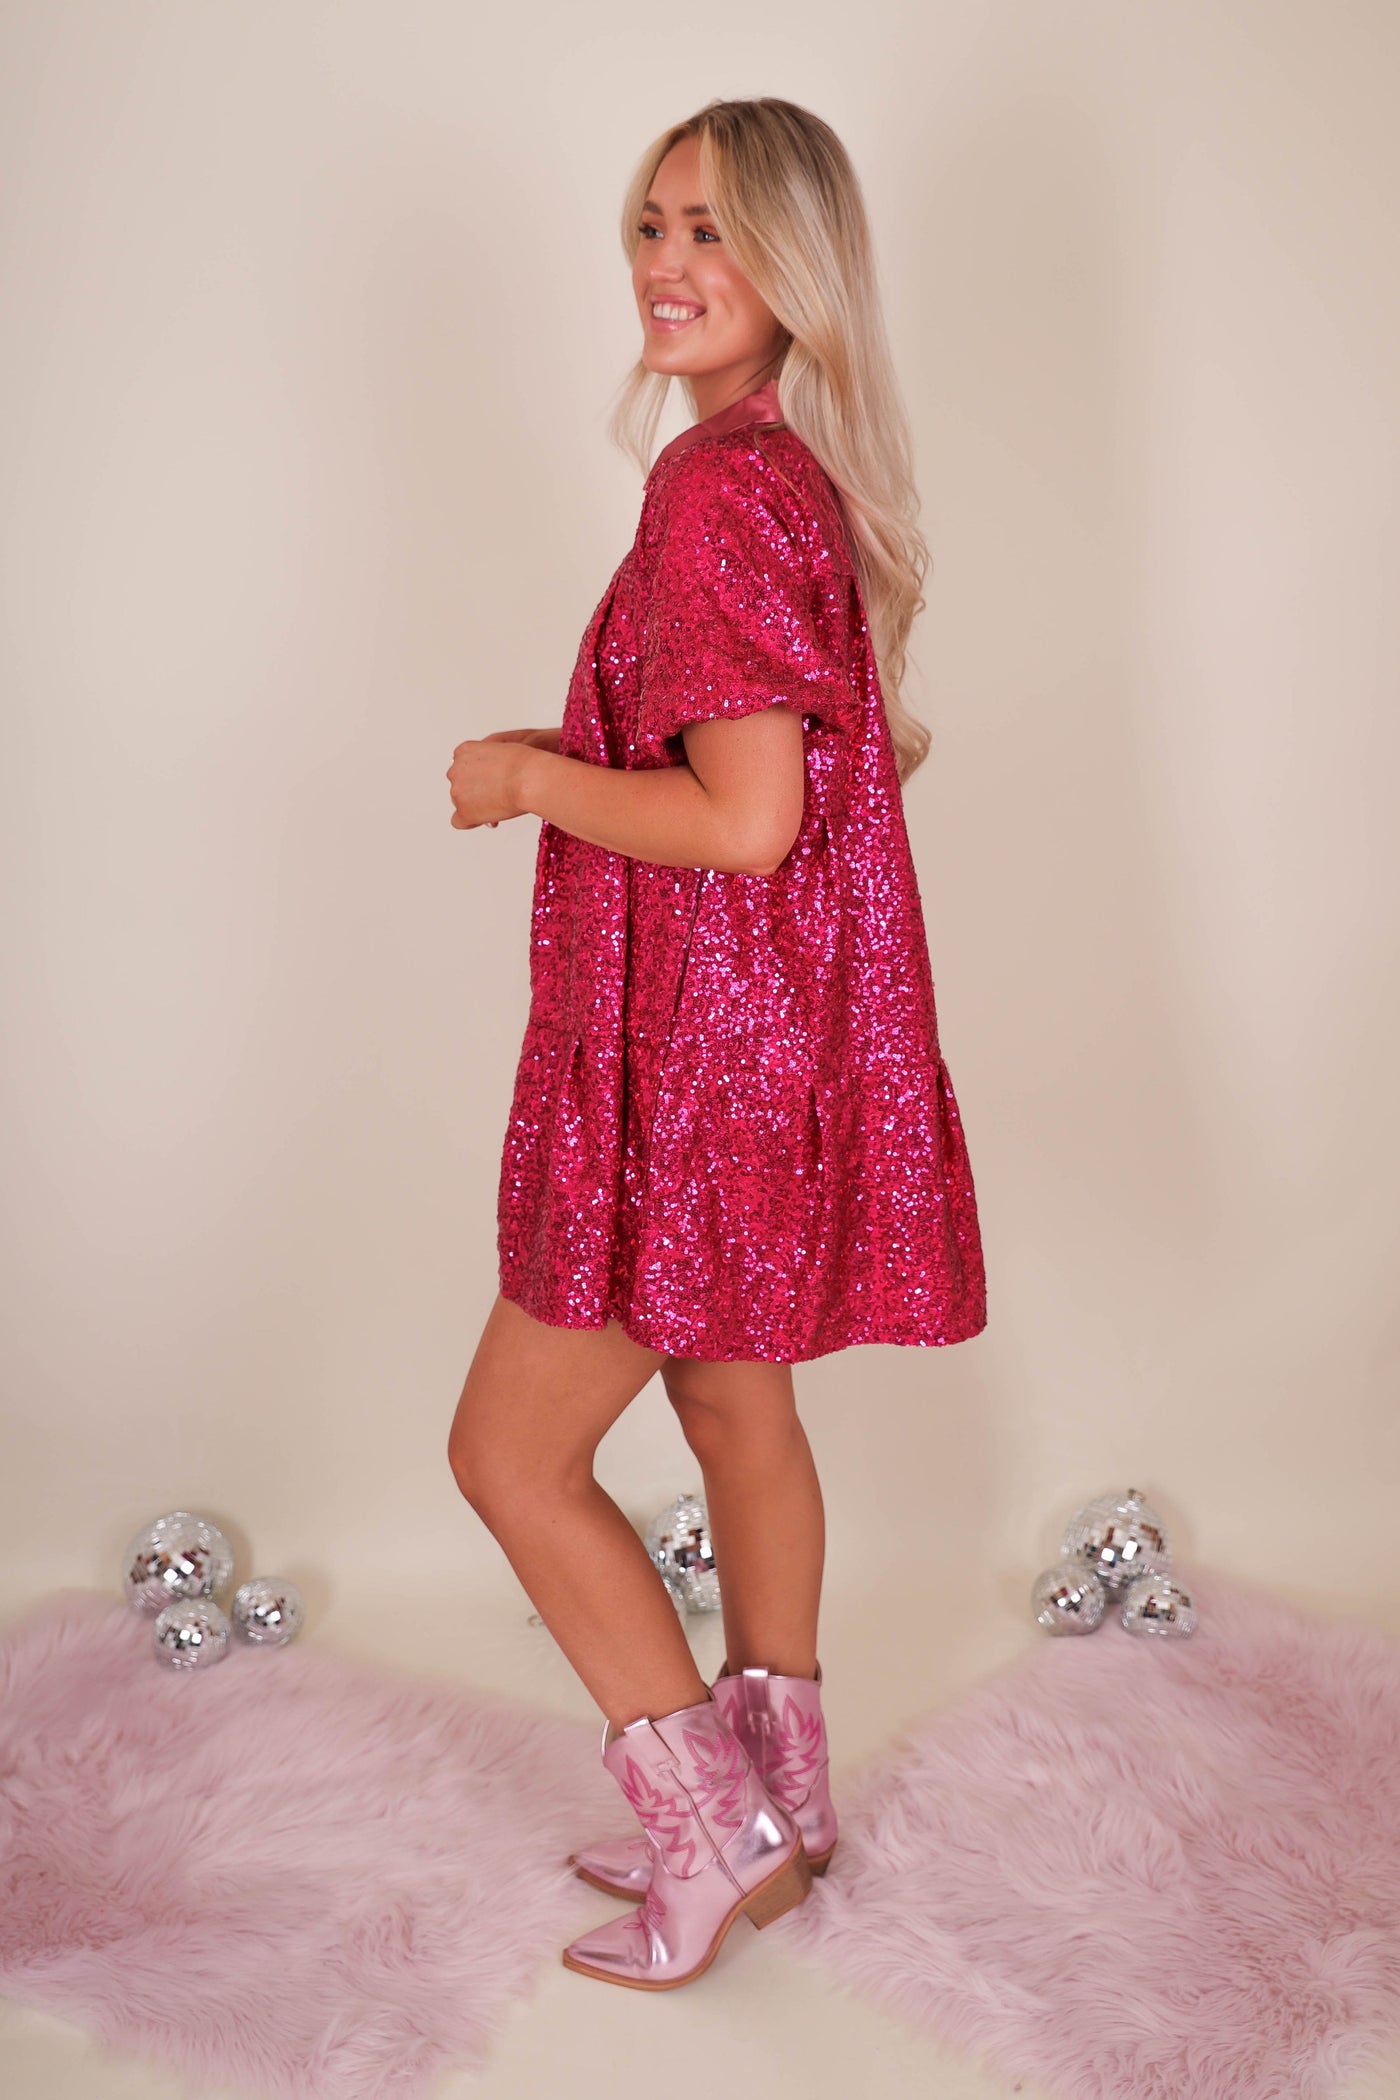 Sparkles Sequin Pink Dress- Queen of Sequins Hot Pink Dress- All Sequin Pink Dress